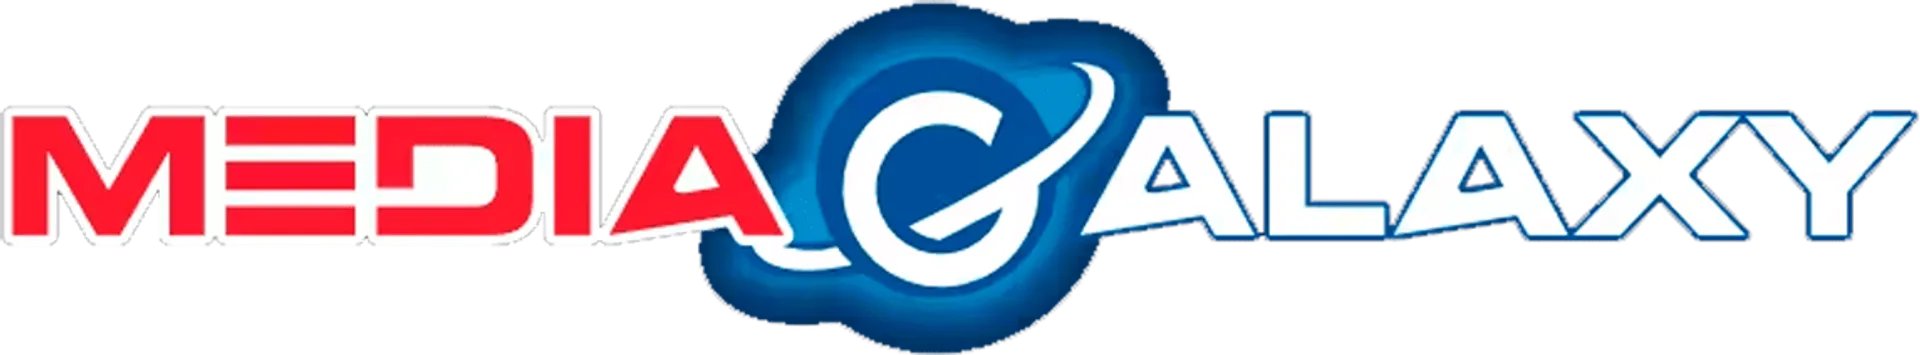 MEDIA GALAXY logo